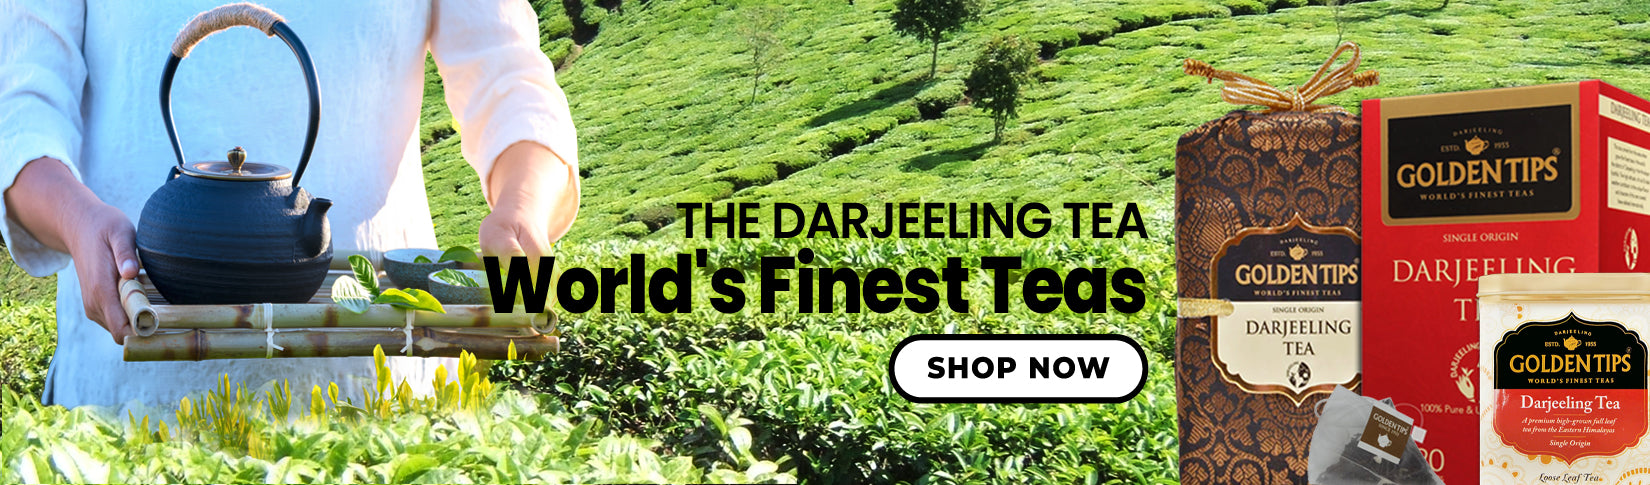 Darjeeling Teas